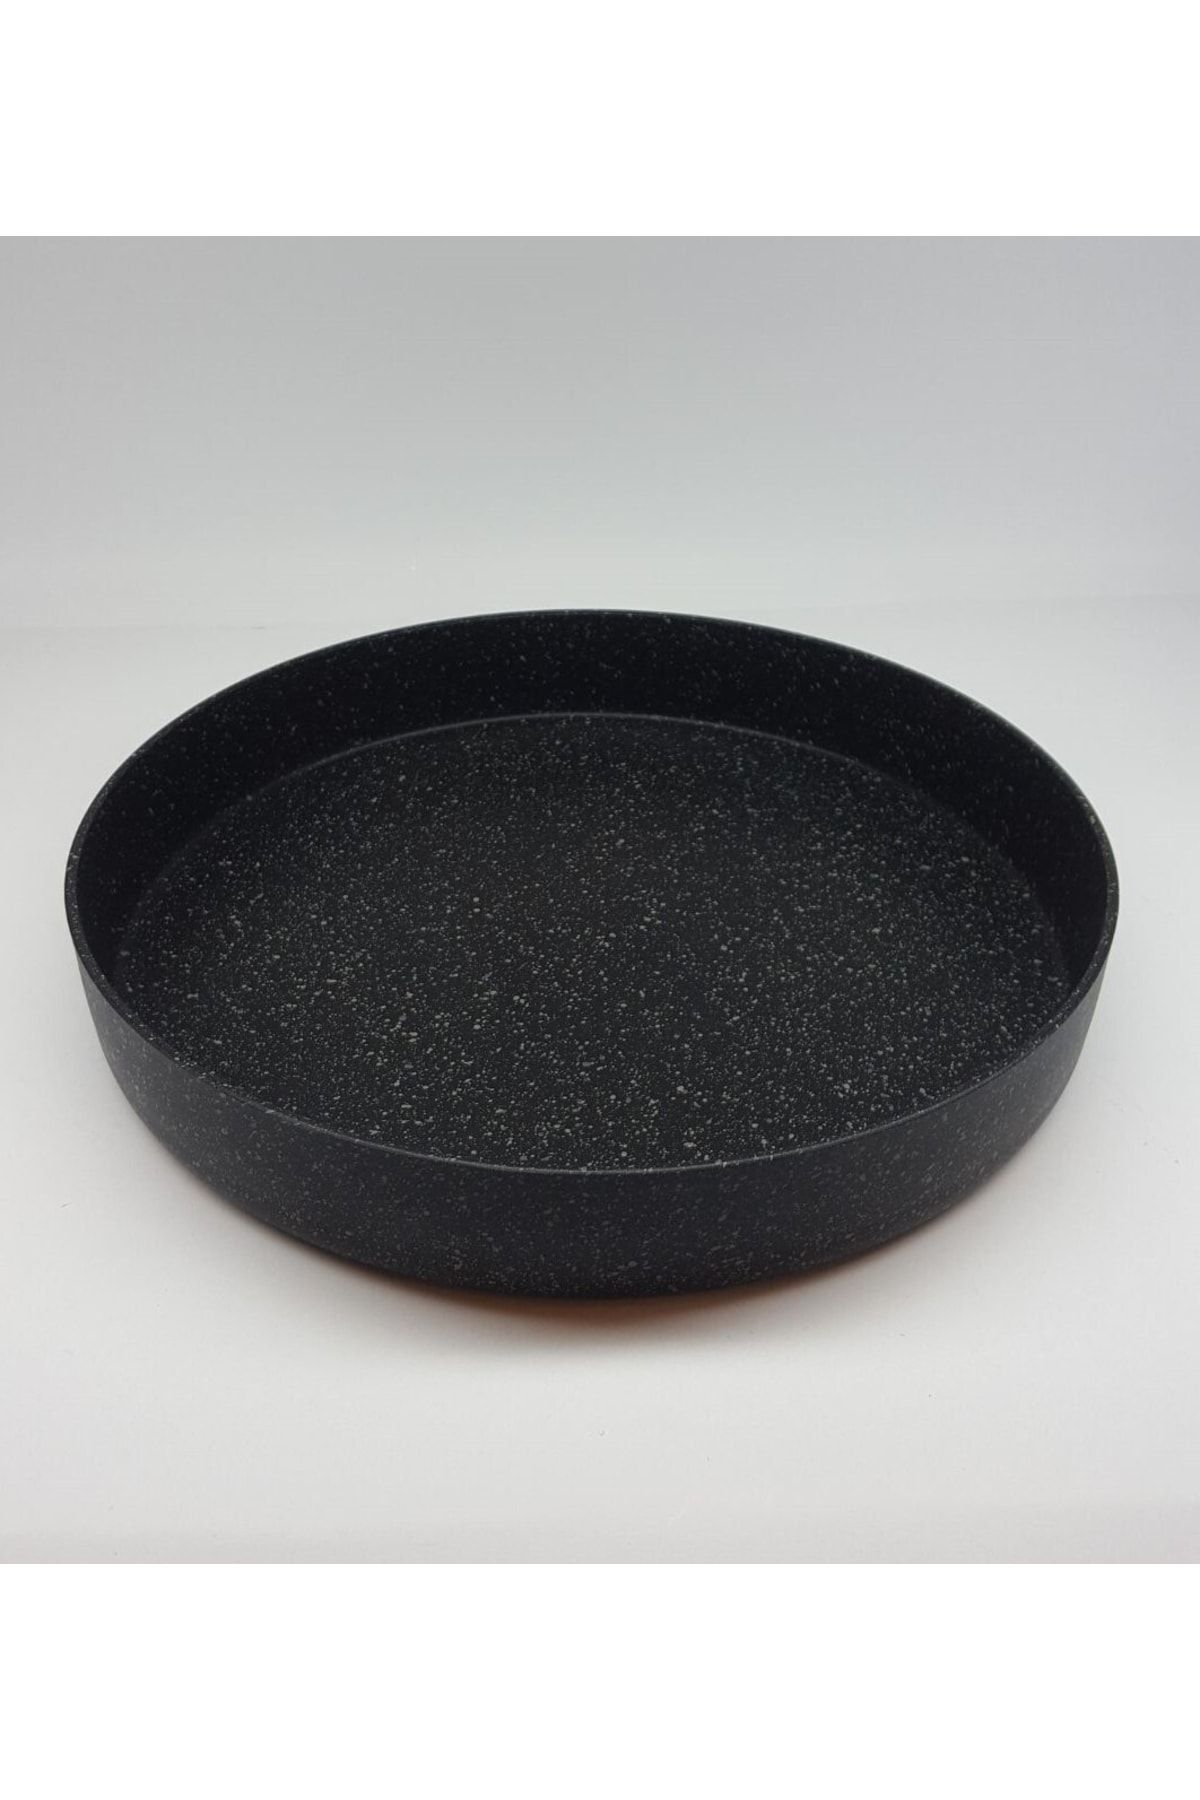 Falez Black Plus Döküm Granit Fırın Tepsisi 32 Cm